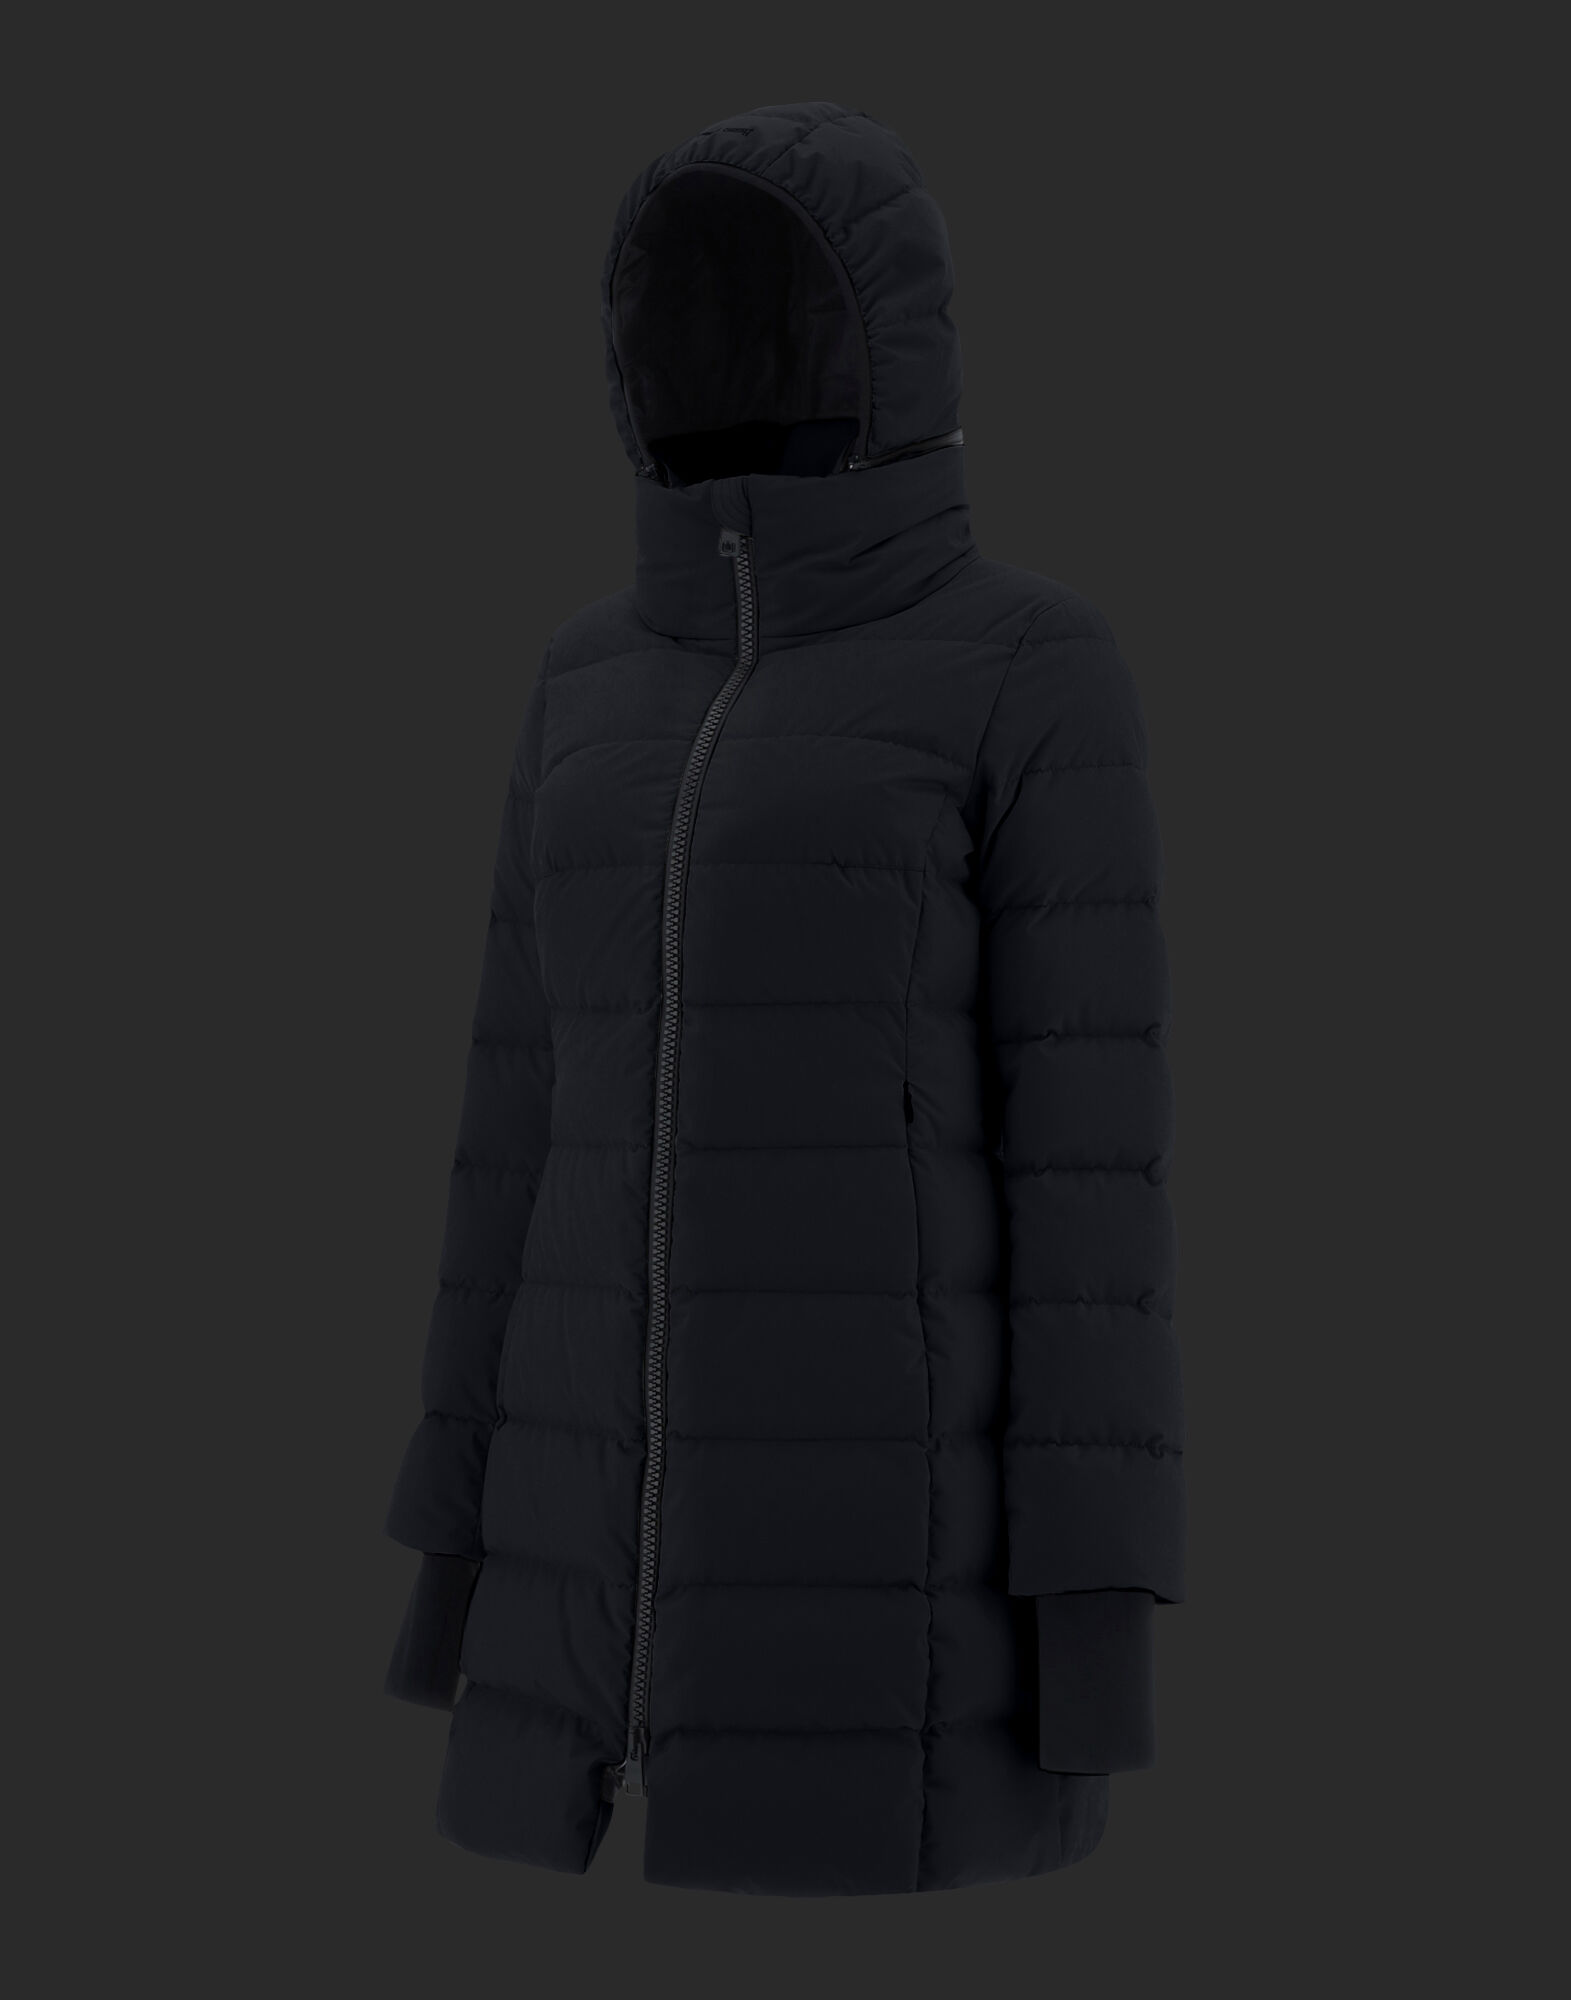 LAMINAR SLIM GORE-TEX WINDSTOPPER COAT in Black for Women | Herno®